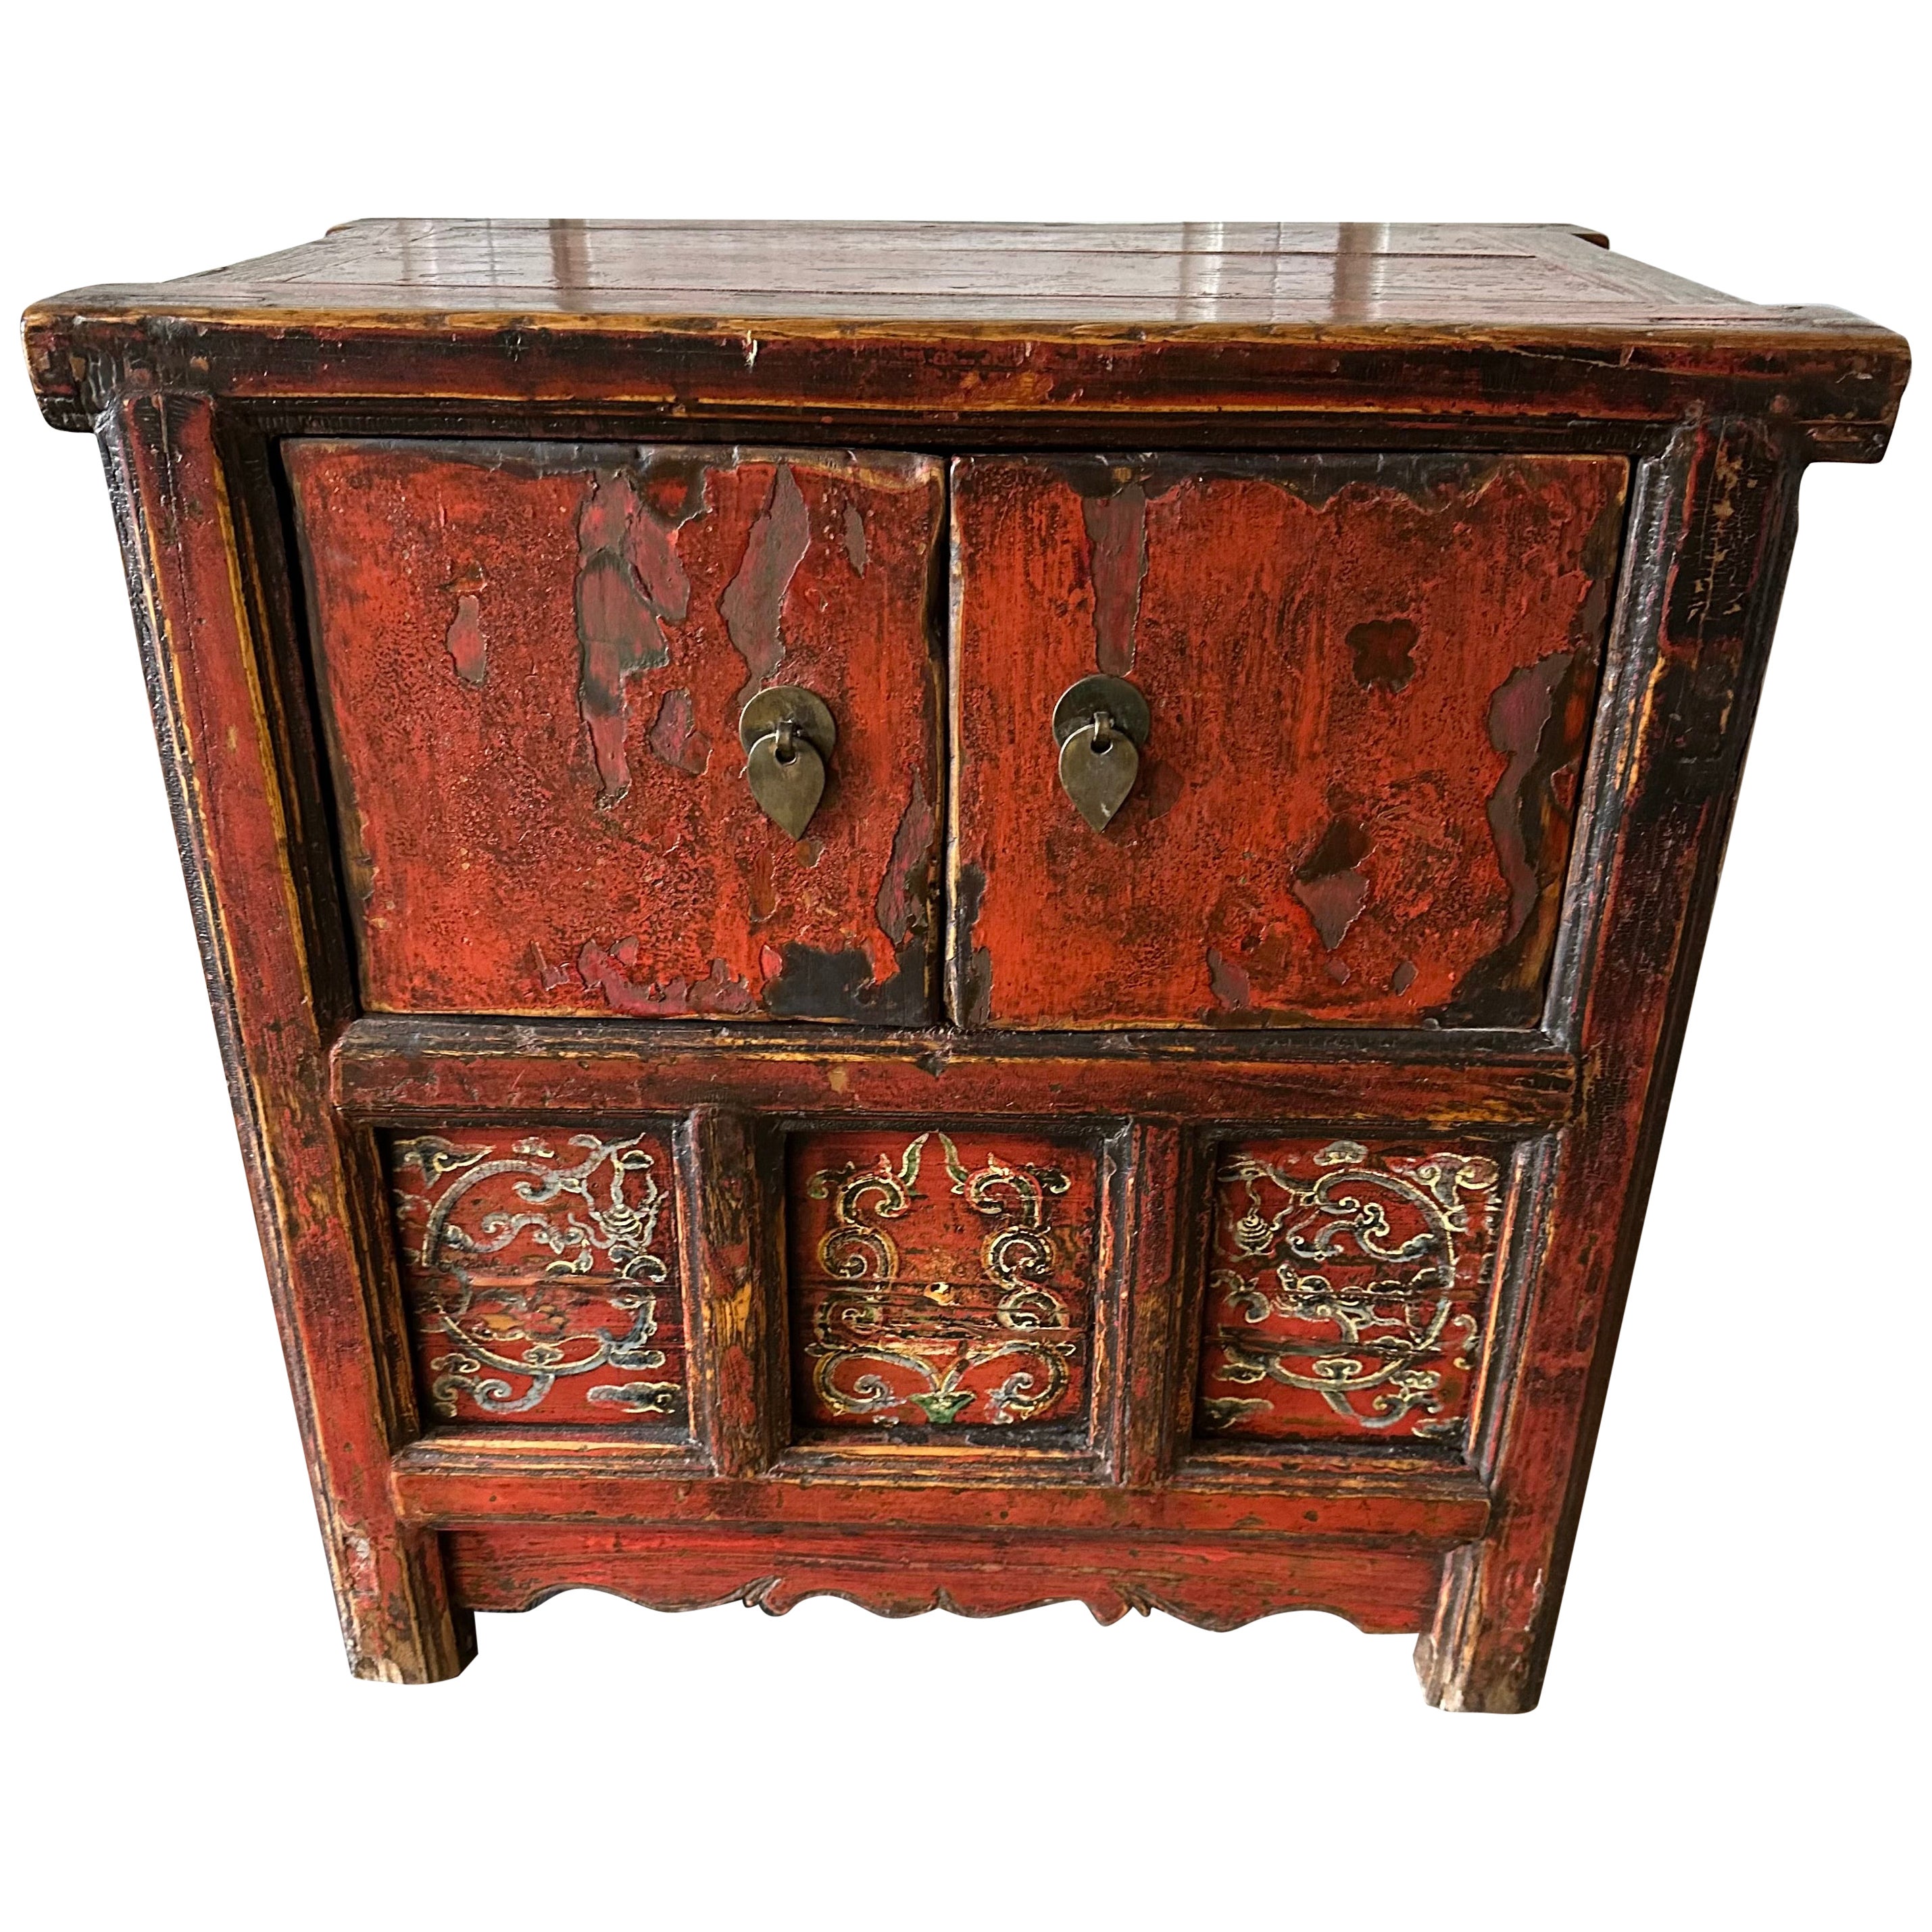 Späte Qing Dynasty Niedriger chinesischer Nachttisch aus rotem Lack